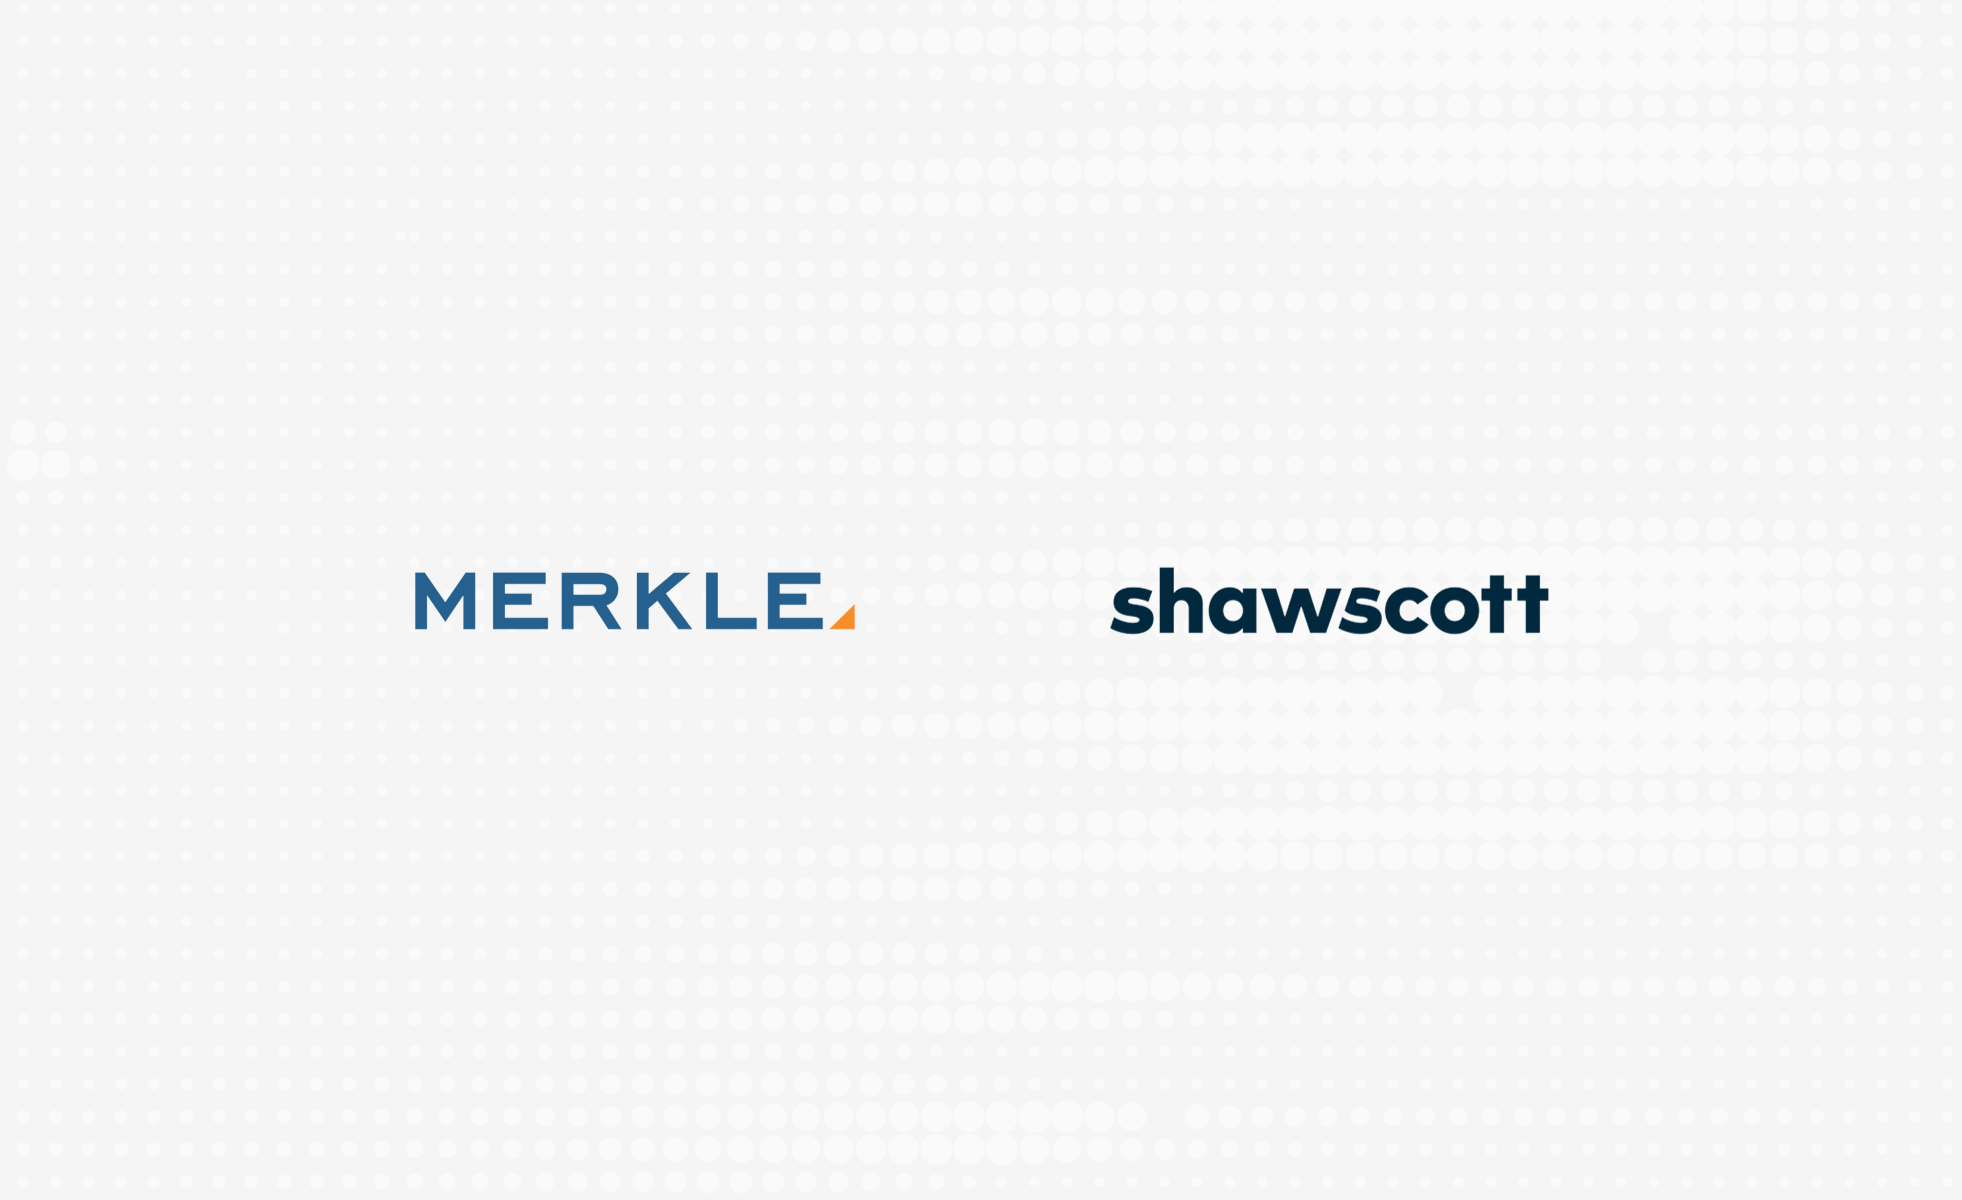 Agency partner logos including Merkle and shawscott